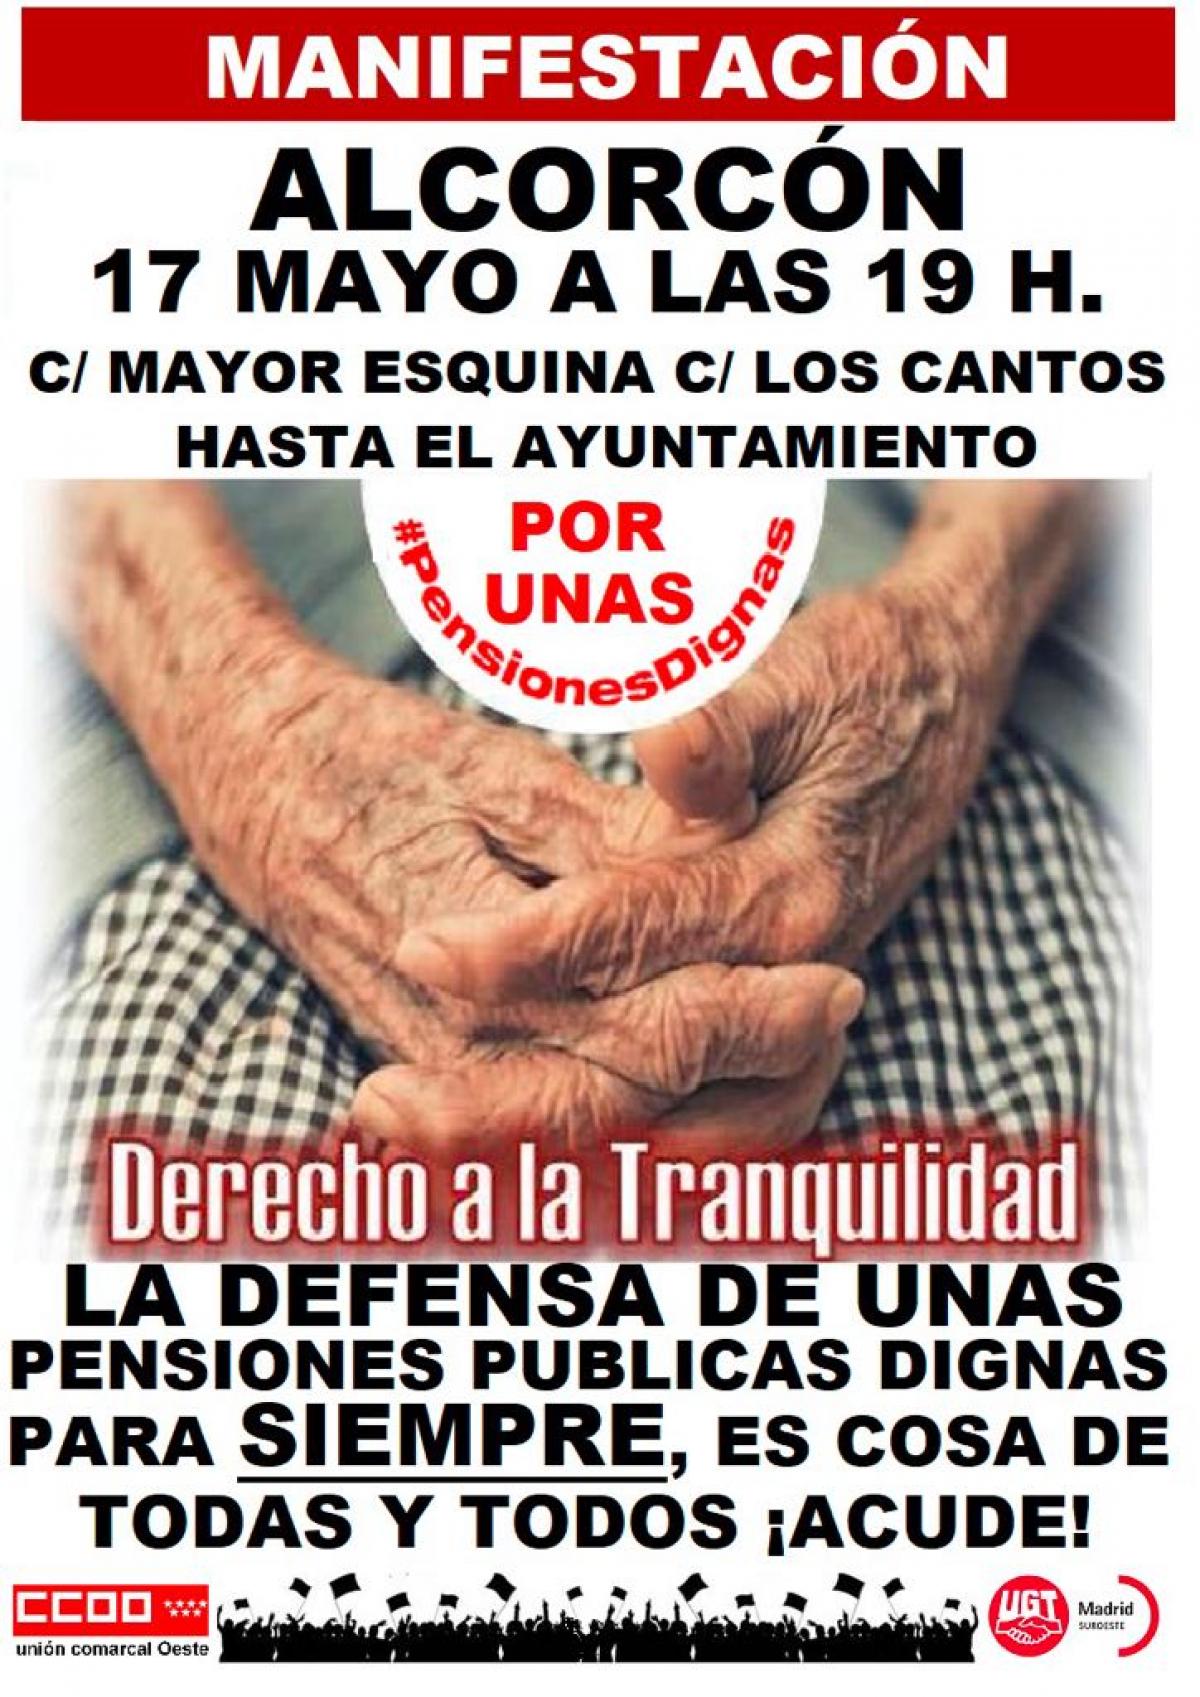 Manifestación en Alcorcón en defensa de unas pensiones dignas